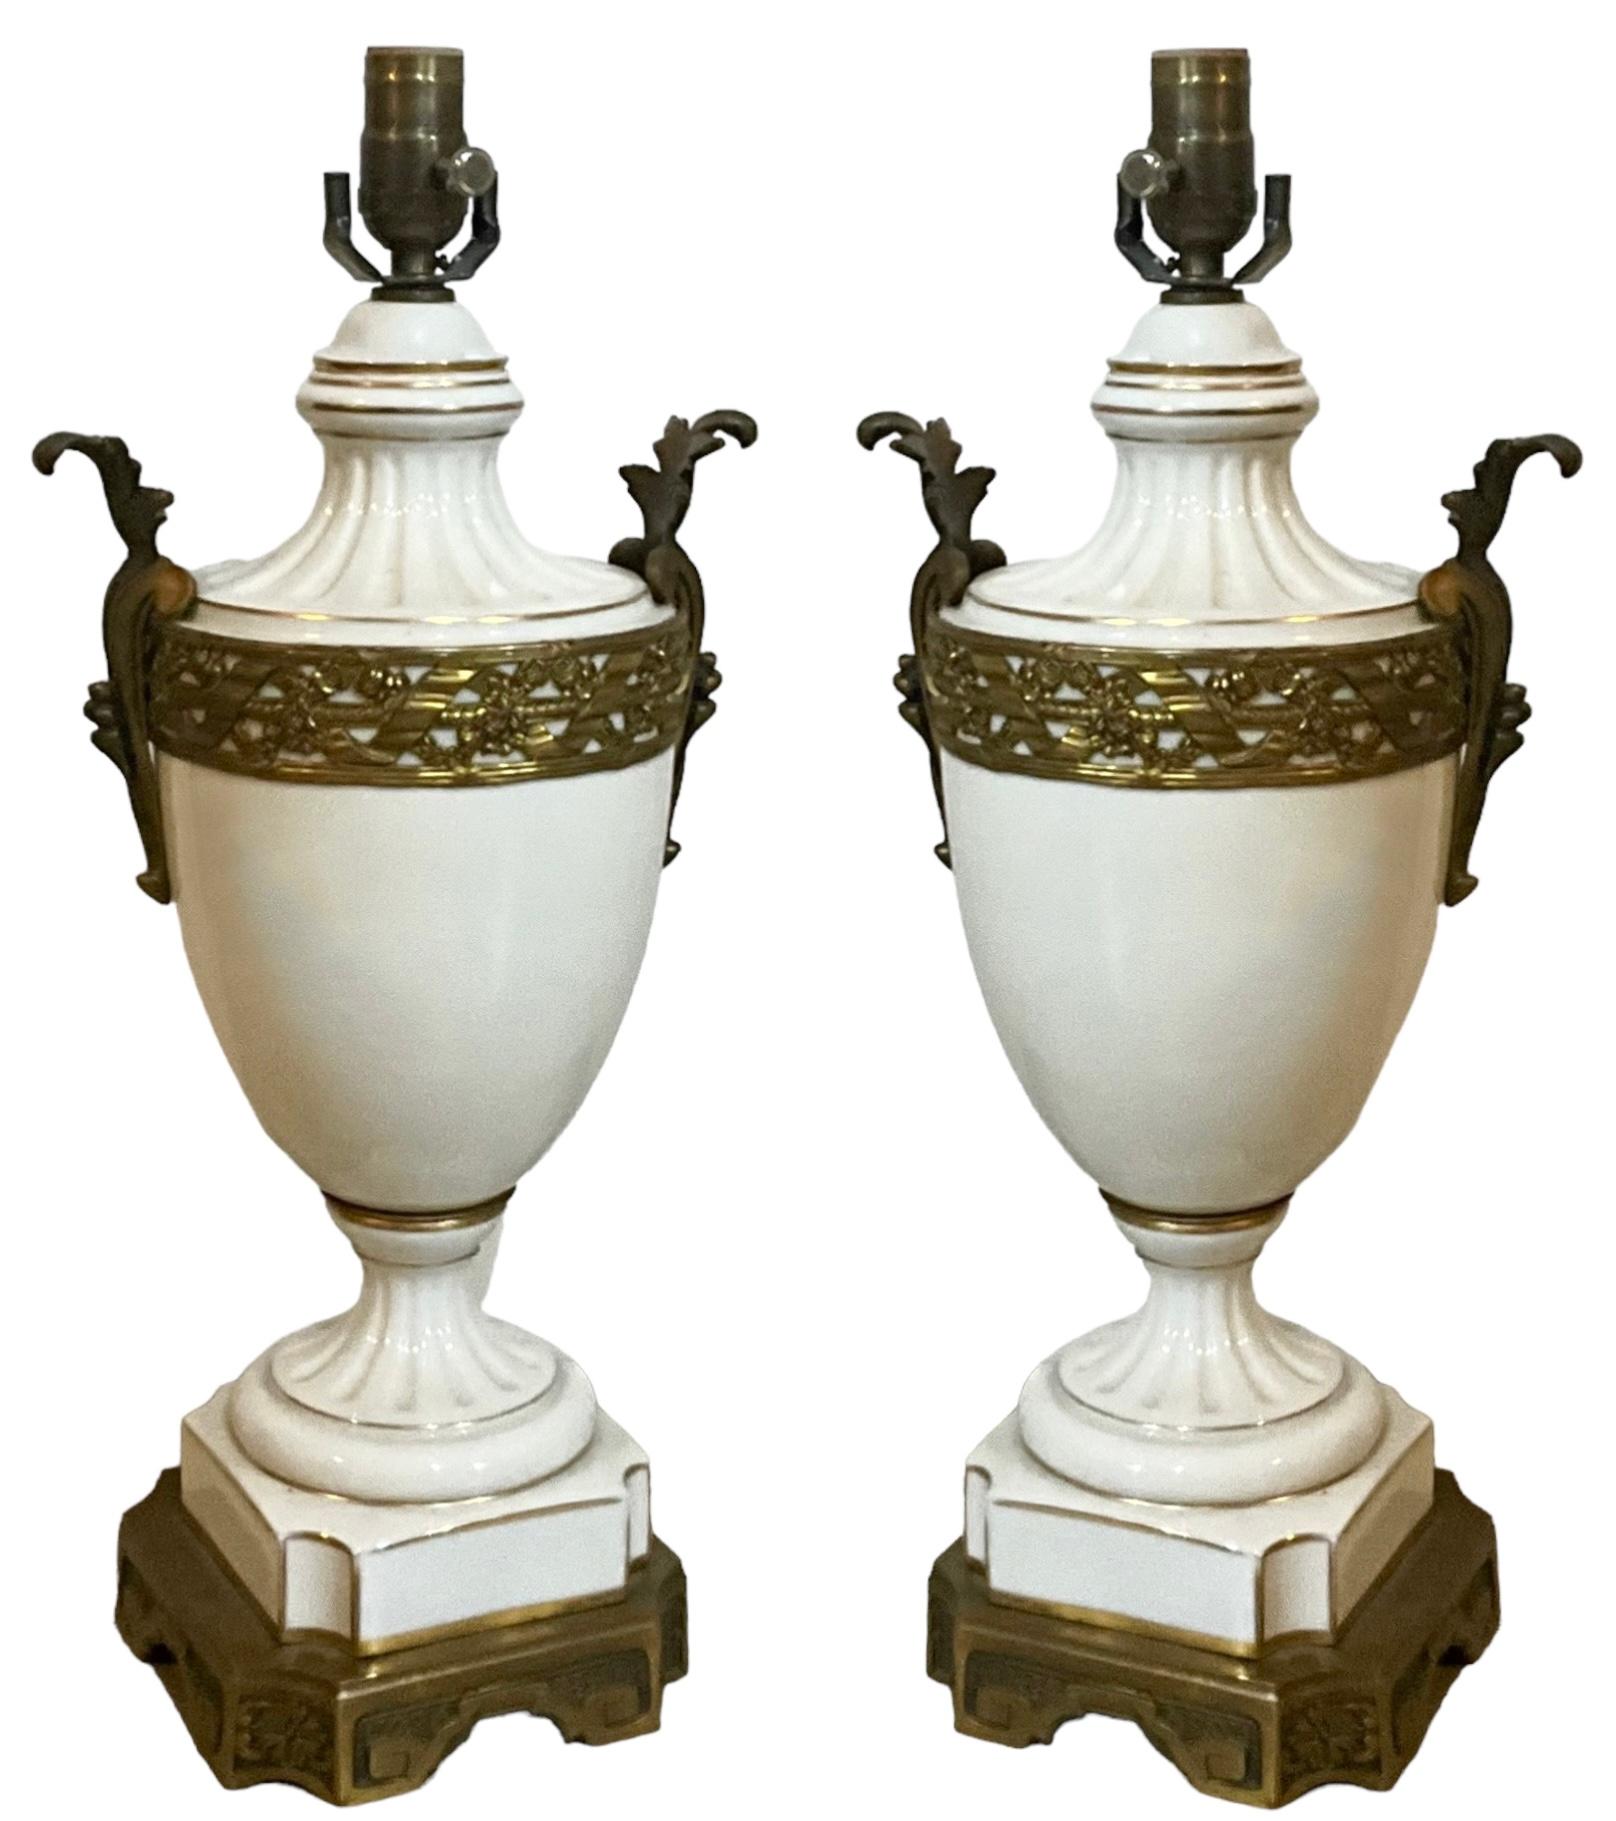 Die sind wunderschön! Es handelt sich um ein Paar französische Lampen aus weißem Porzellan im neoklassizistischen Stil mit vergoldeten und bronzefarbenen Akzenten. Die Verkabelung ist neu, und ich glaube, dass sie im Inneren des Vorbaus signiert